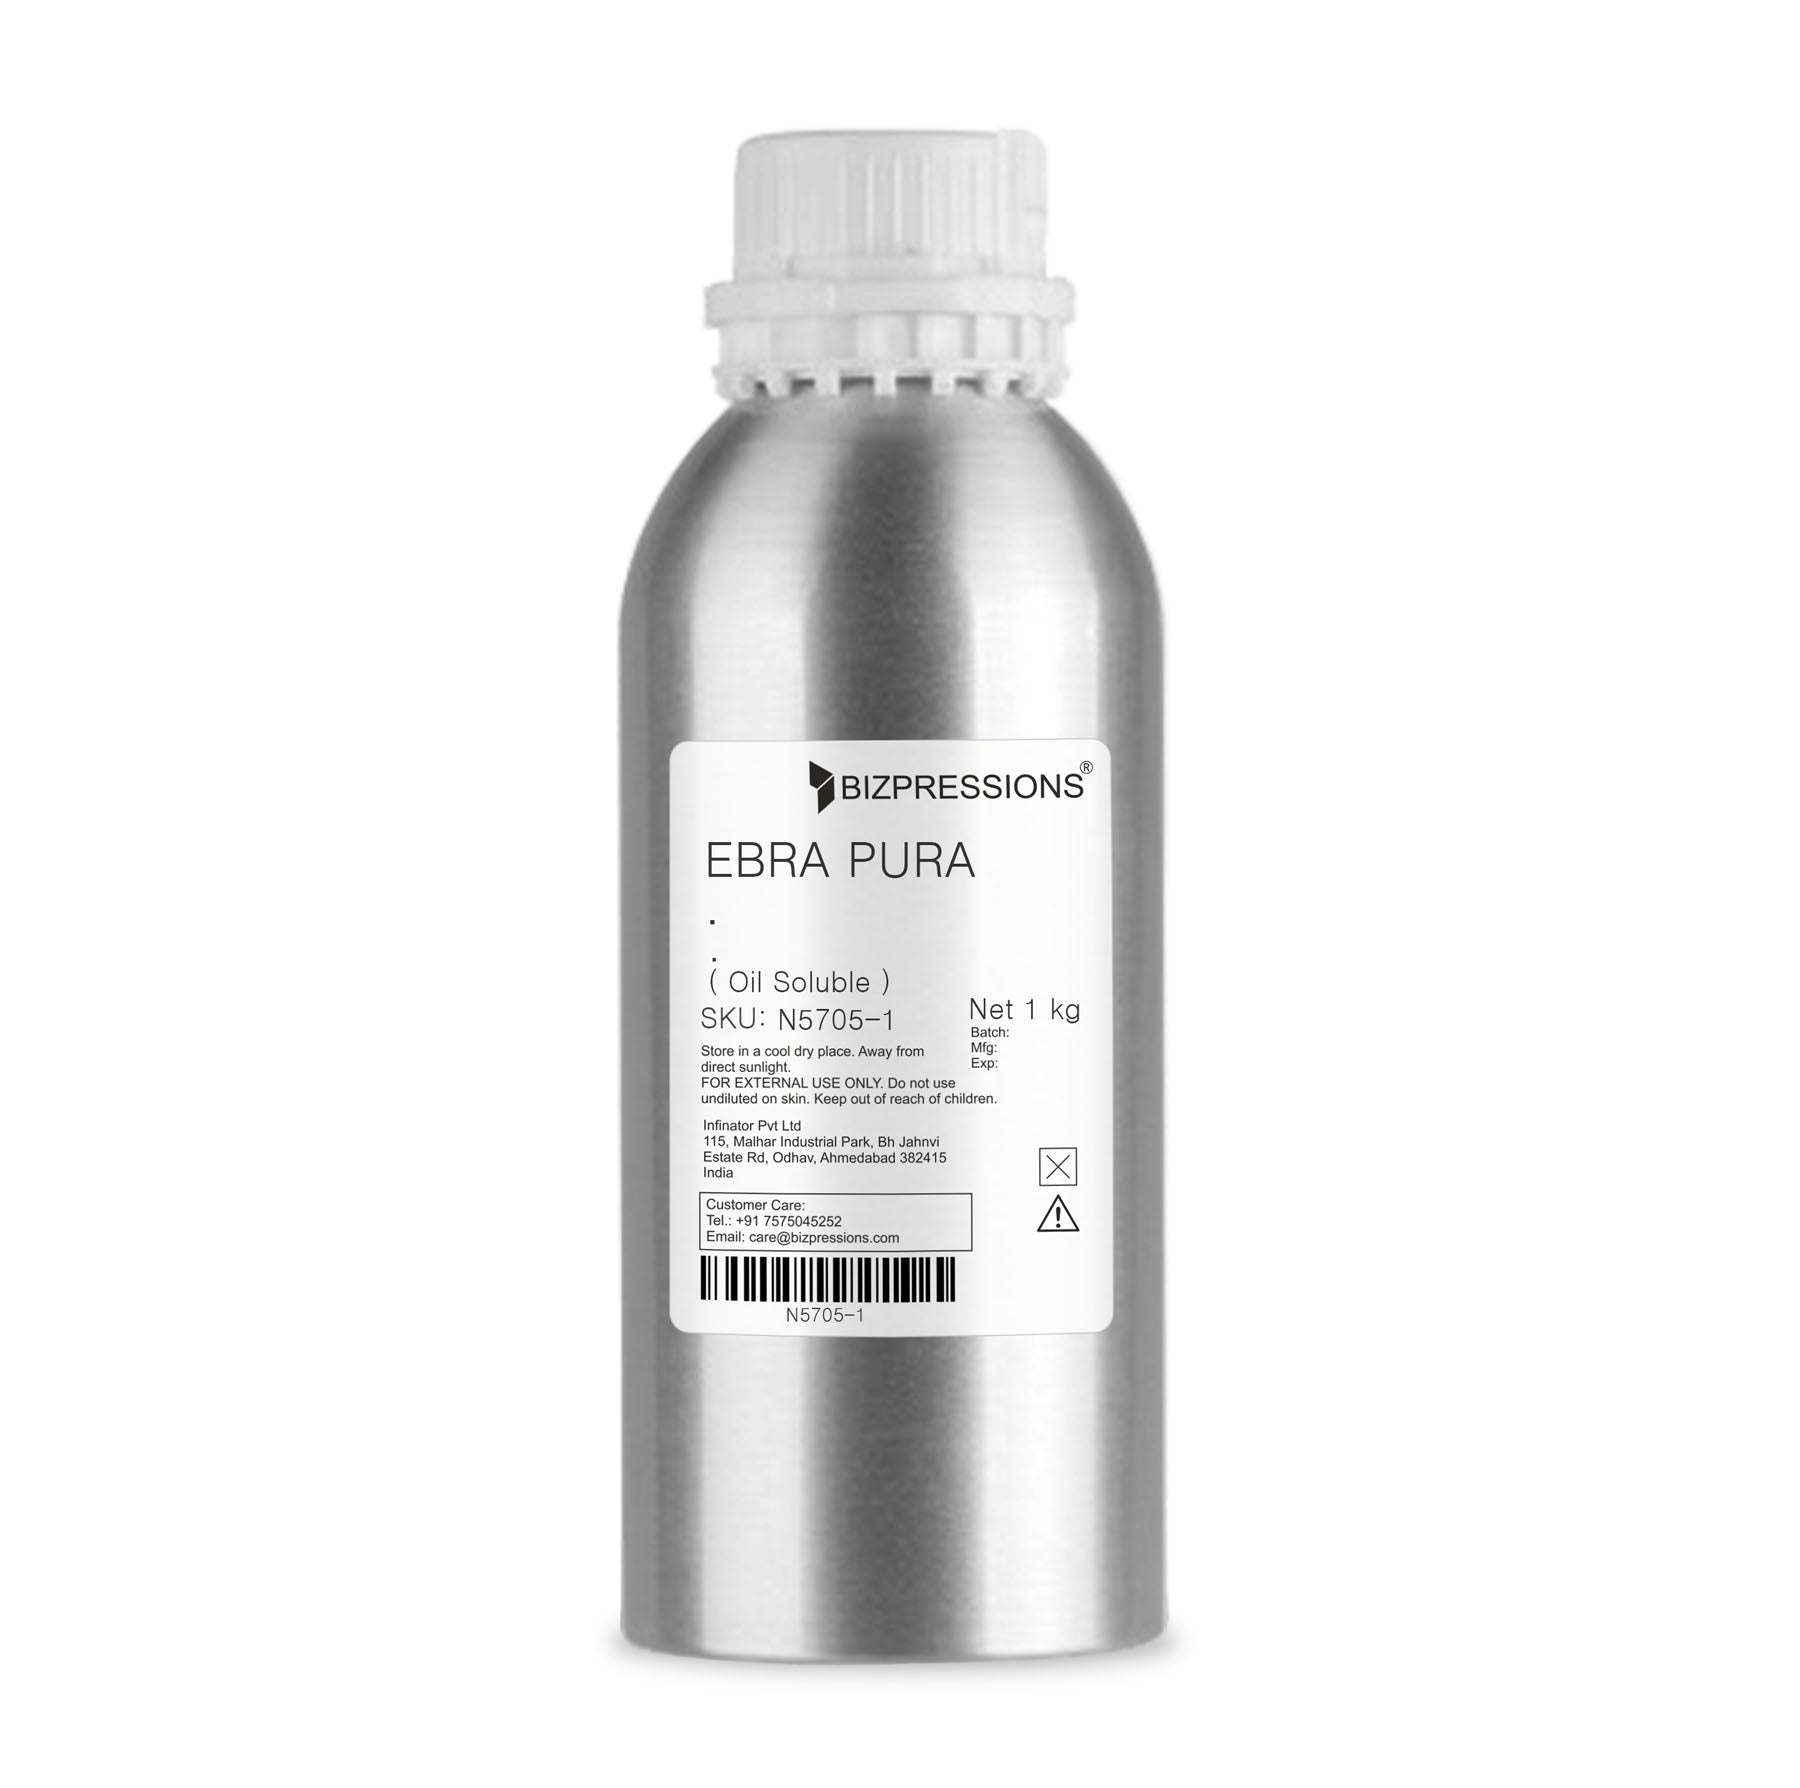 EBRA PURA - Fragrance ( Oil Soluble ) - 1 kg